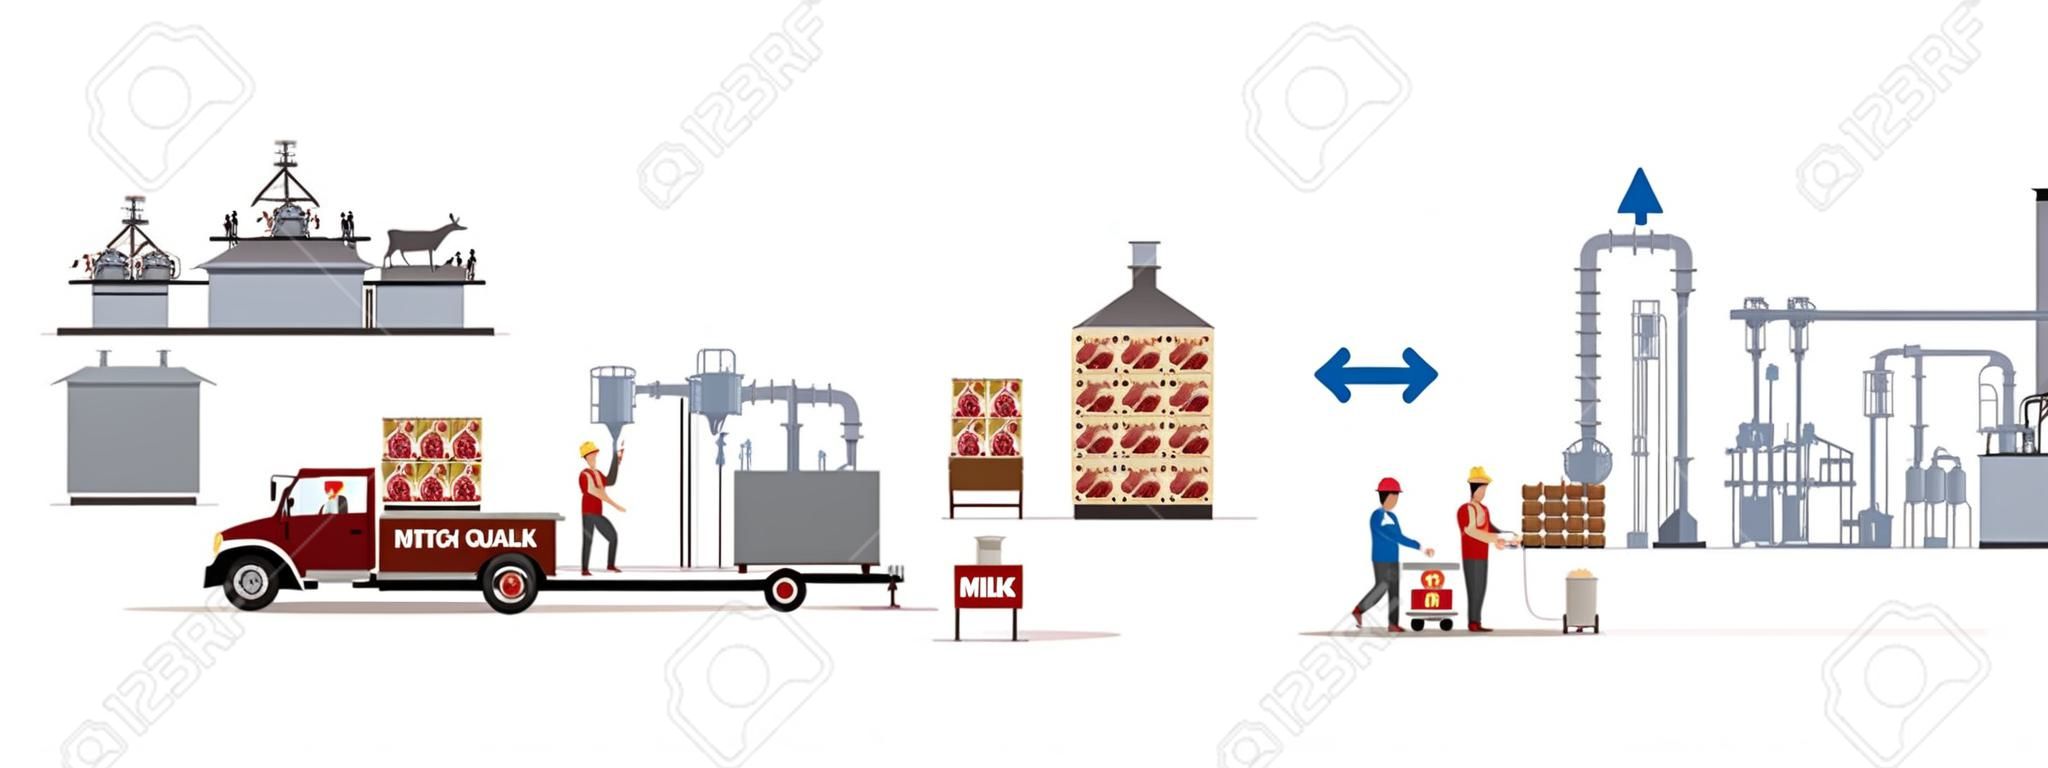 Fábrica de leche y carne con máquinas automáticas y trabajadores. Ilustración vectorial